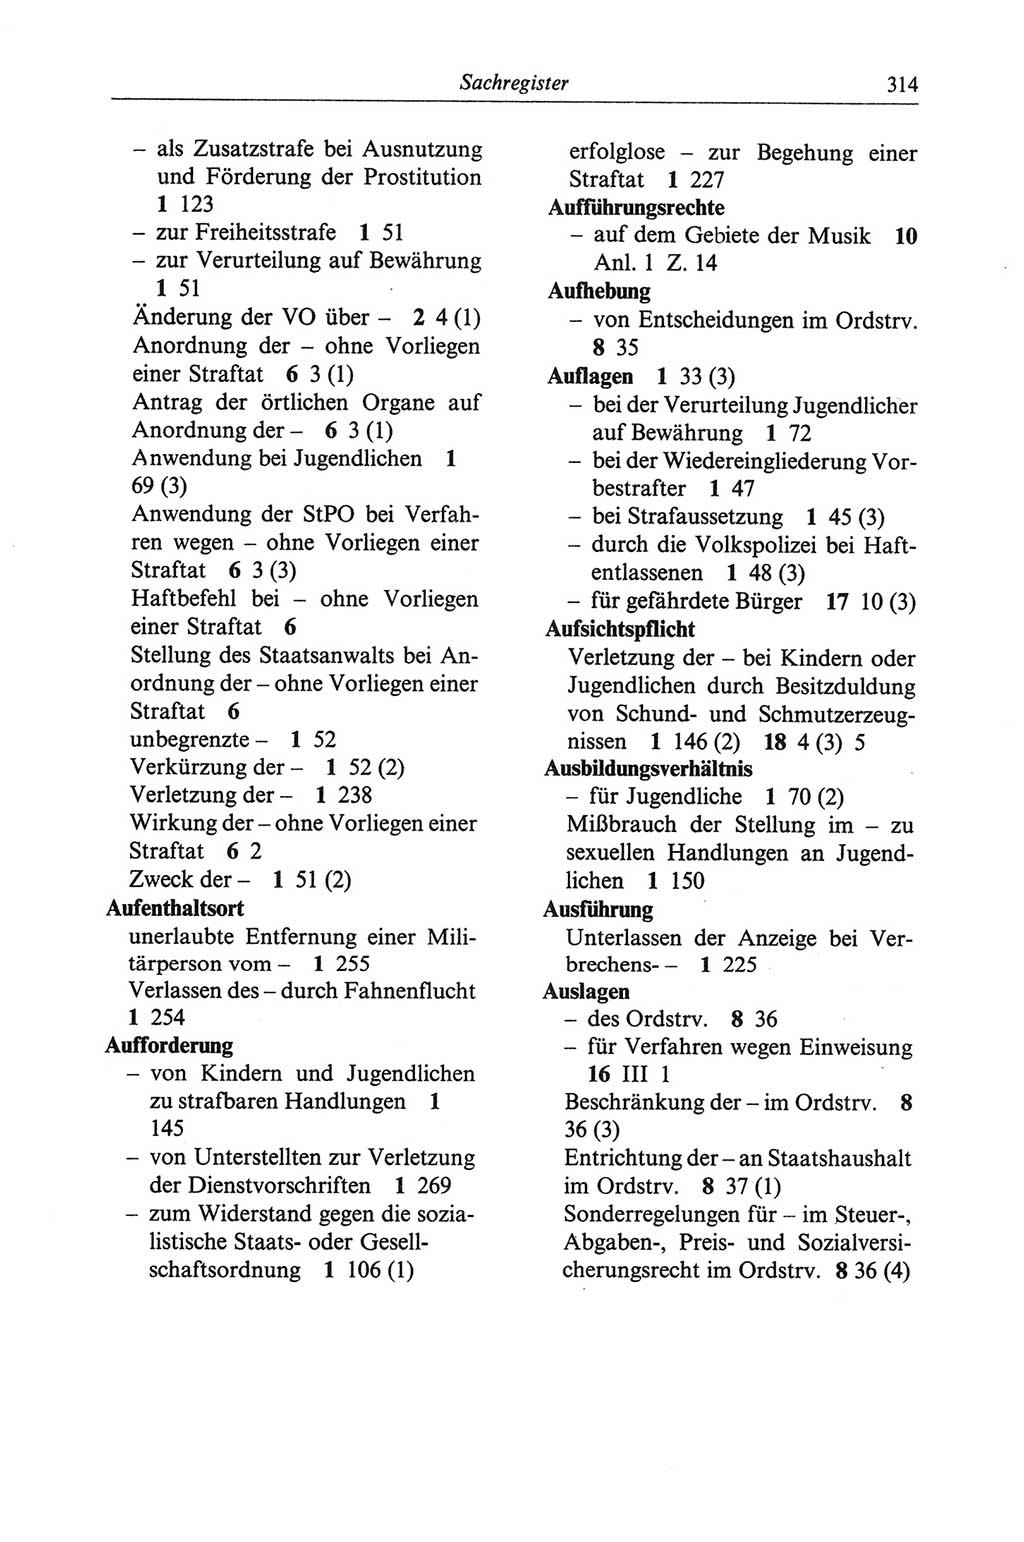 Strafgesetzbuch (StGB) der Deutschen Demokratischen Republik (DDR) und angrenzende Gesetze und Bestimmungen 1968, Seite 314 (StGB Ges. Best. DDR 1968, S. 314)